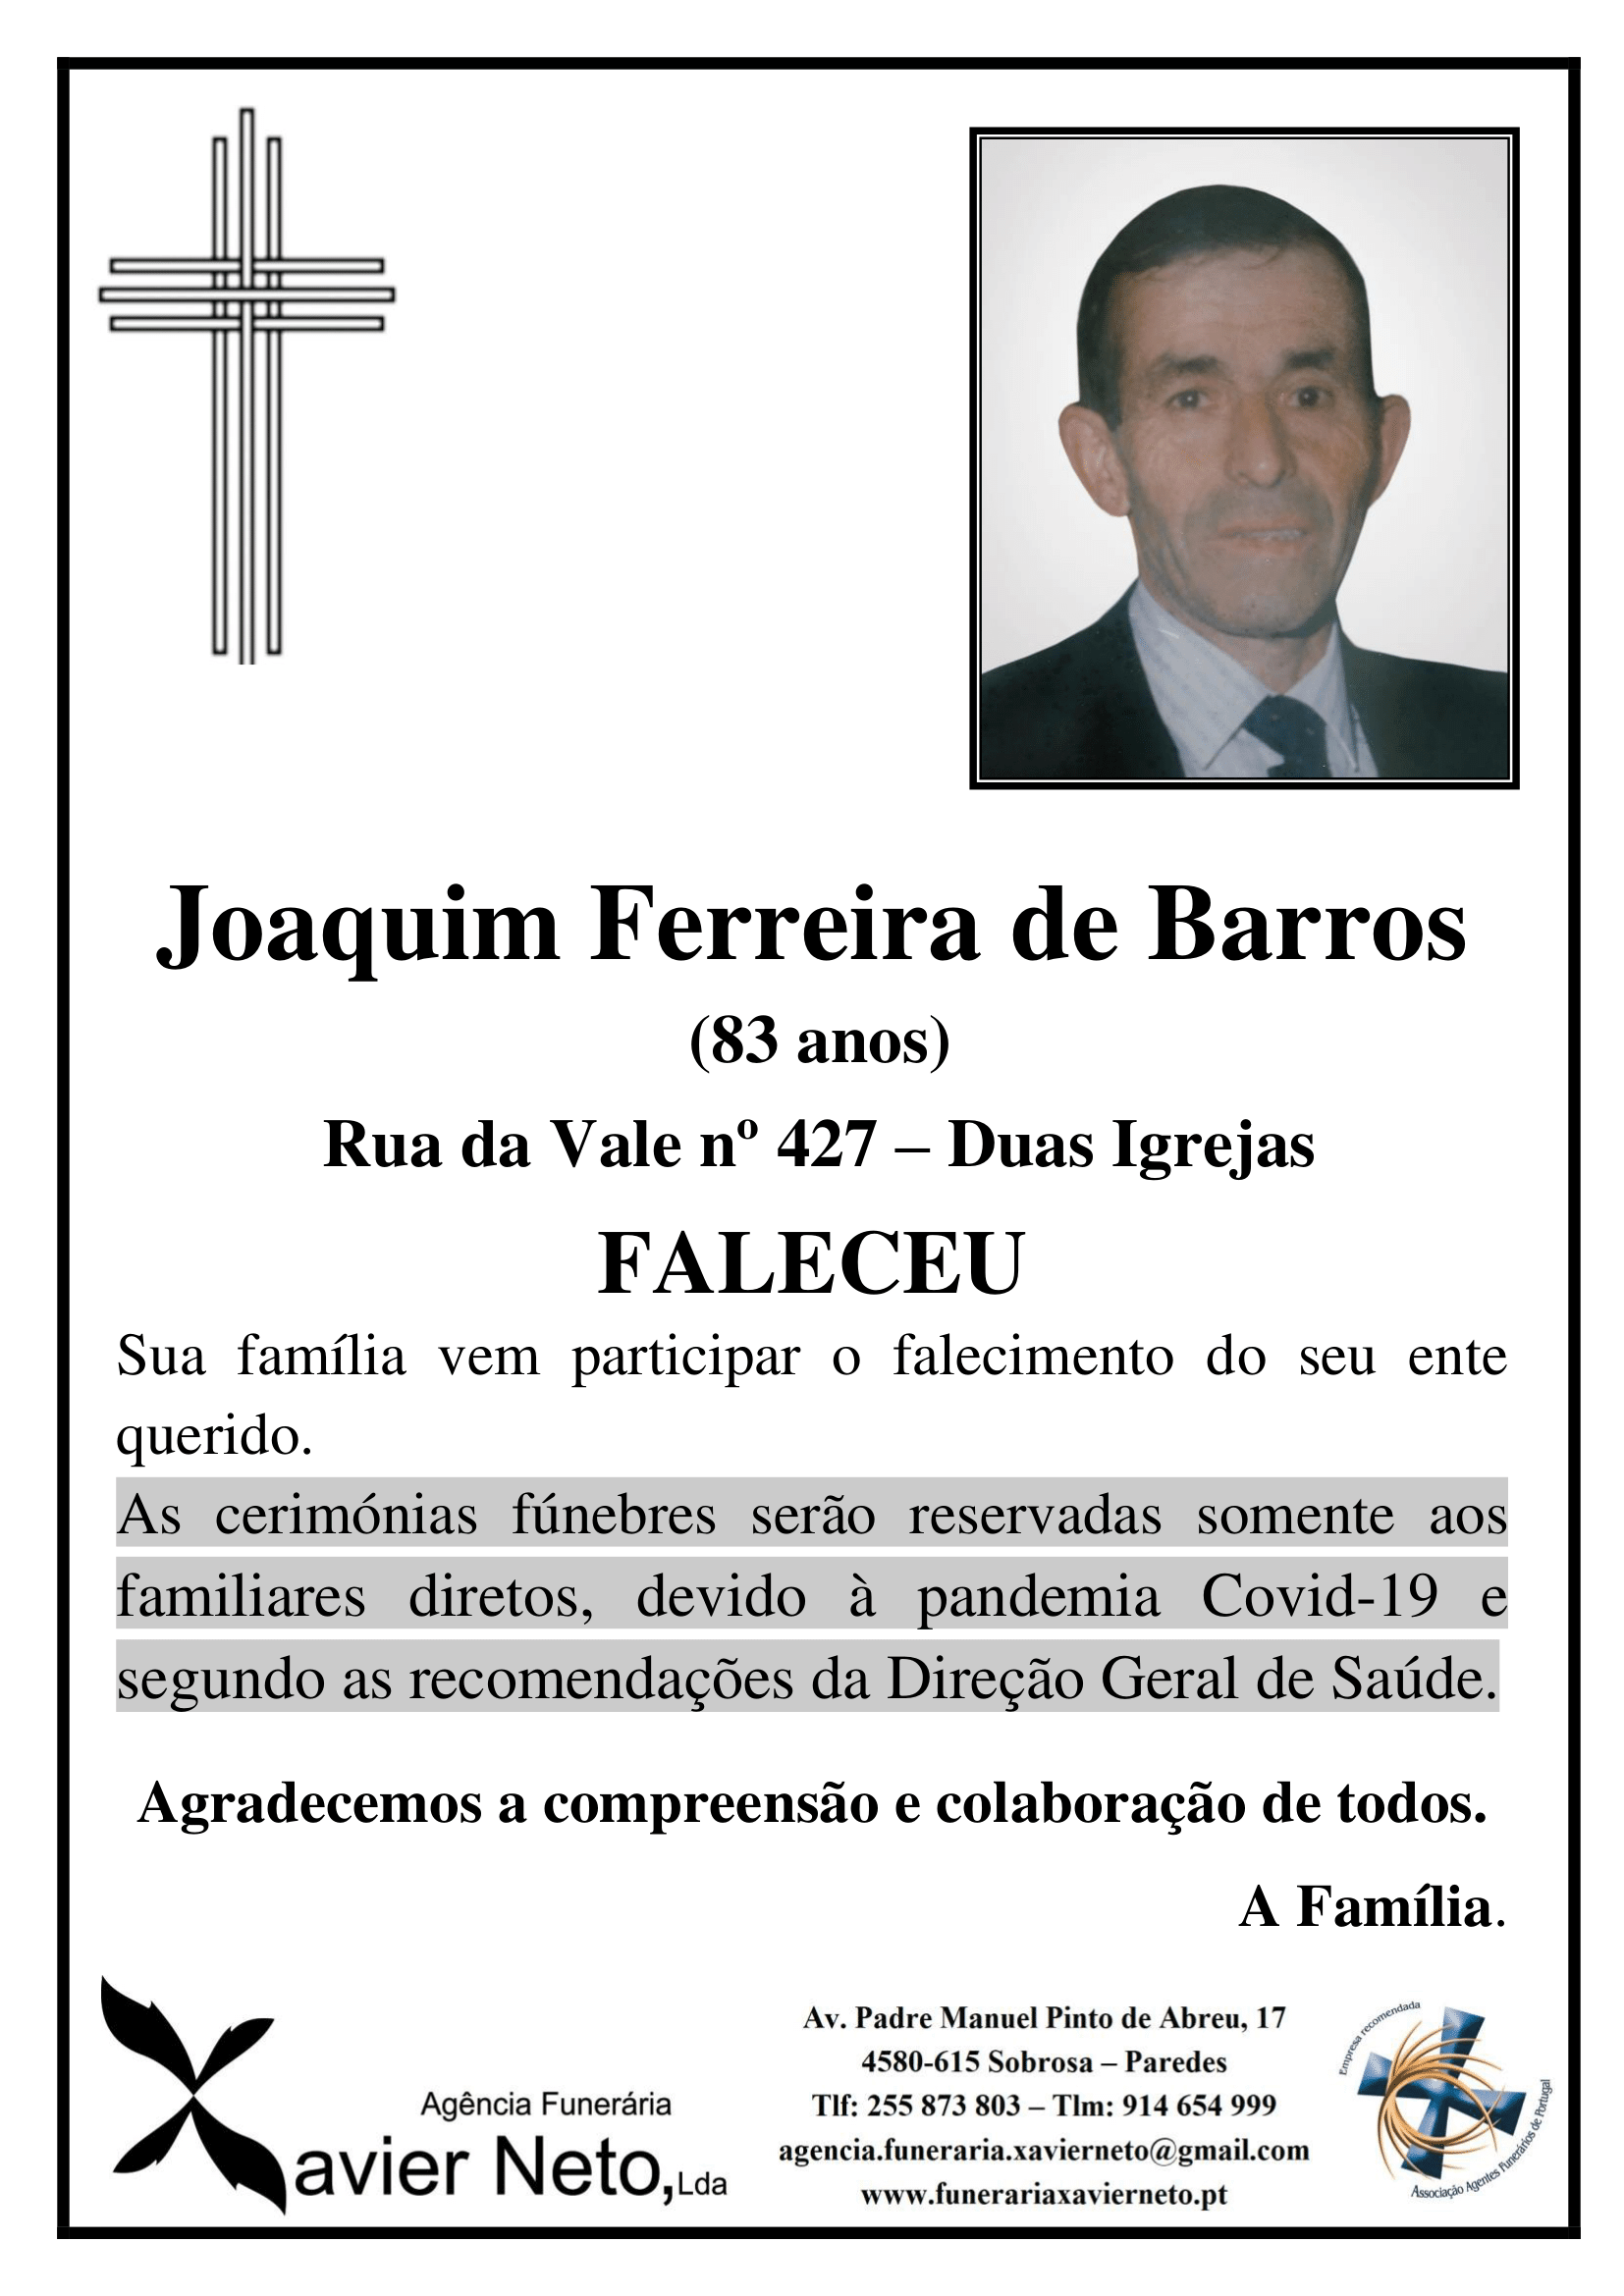 Joaquim Ferreira de Barros